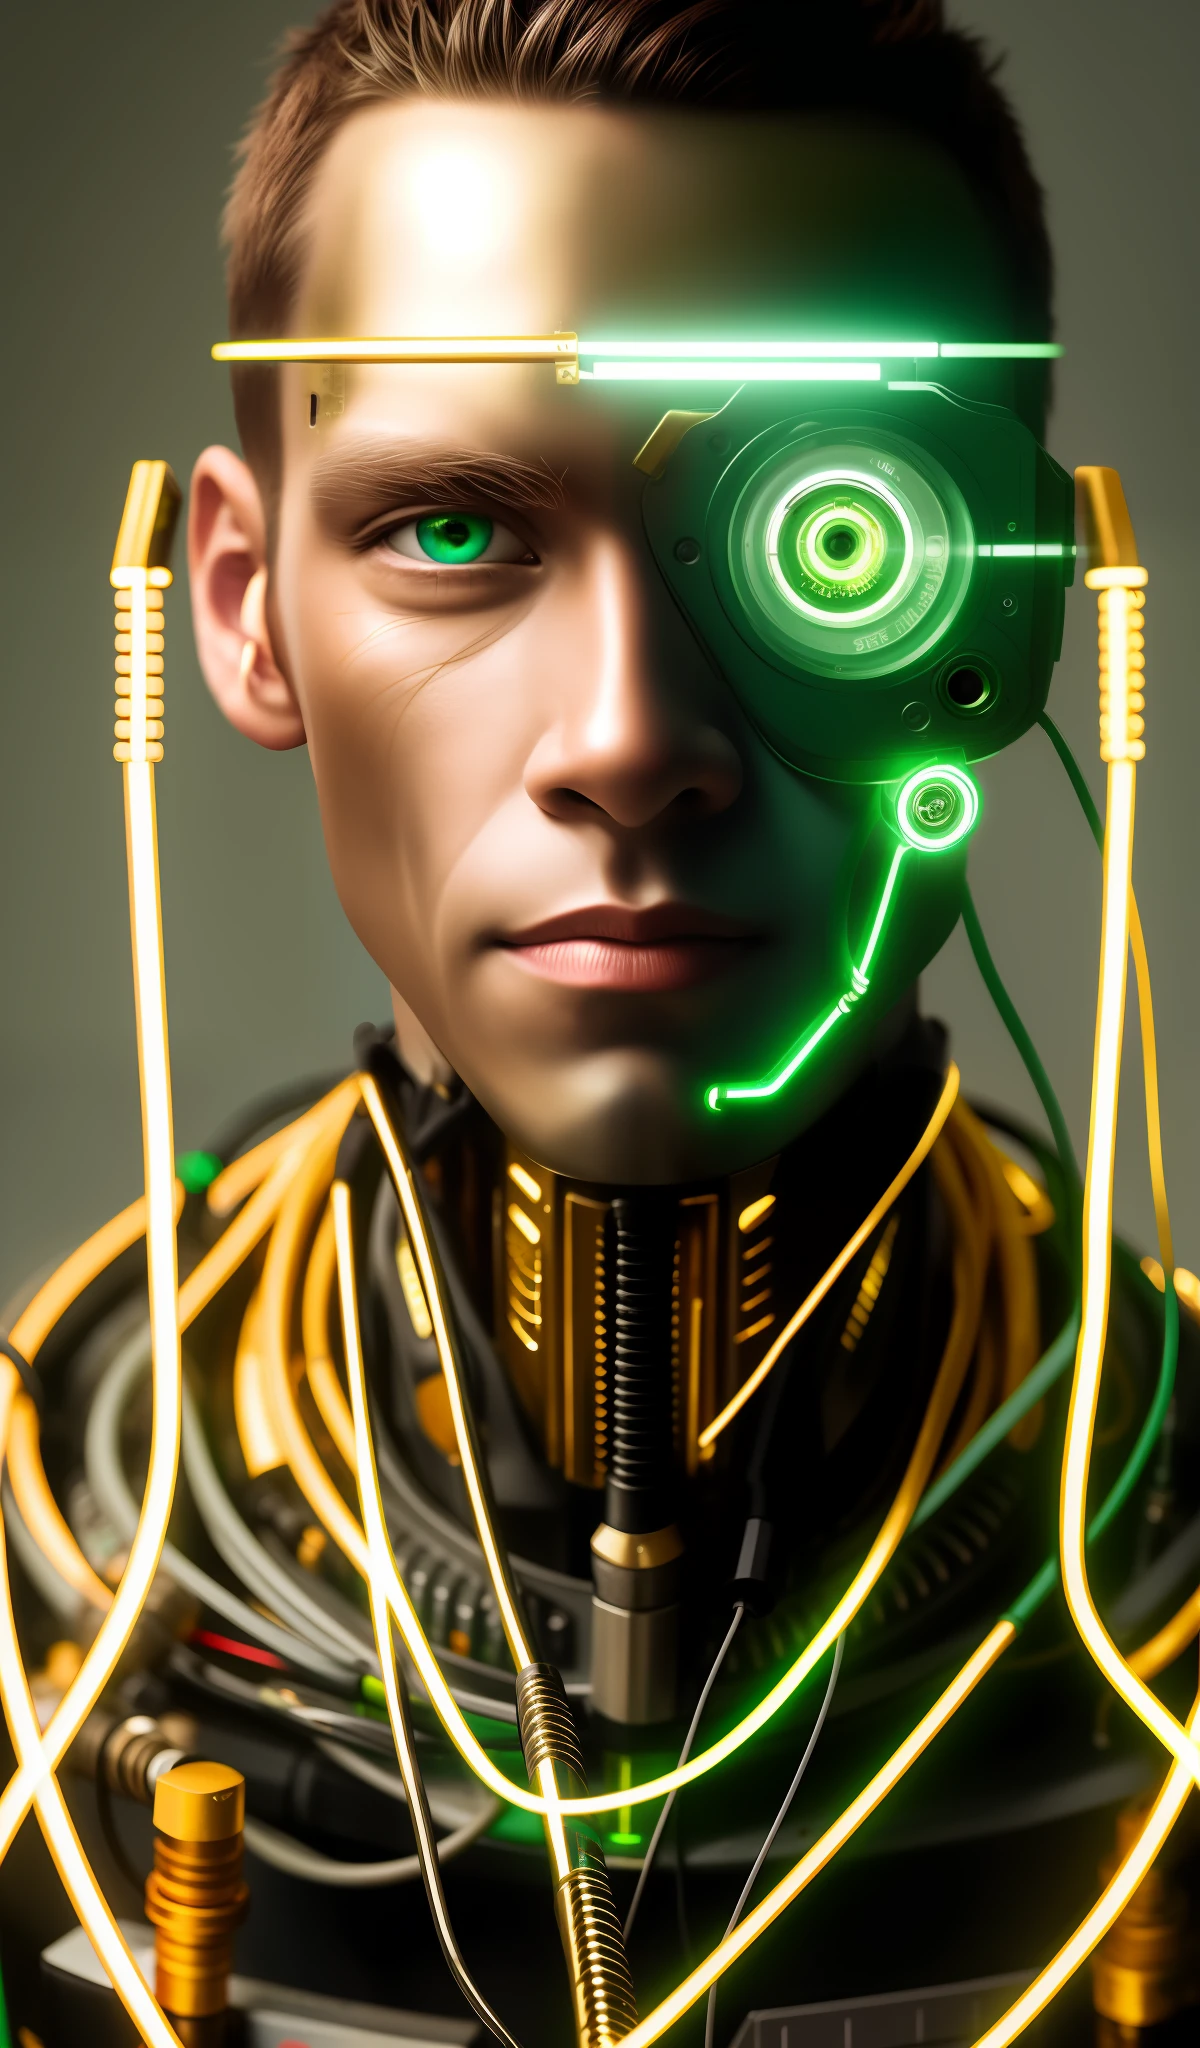 Retrato del hombre cyborg, ojos verdes, mono, model face, Cables expuestos, Aceite de oro que se escapa de cables oxidados.